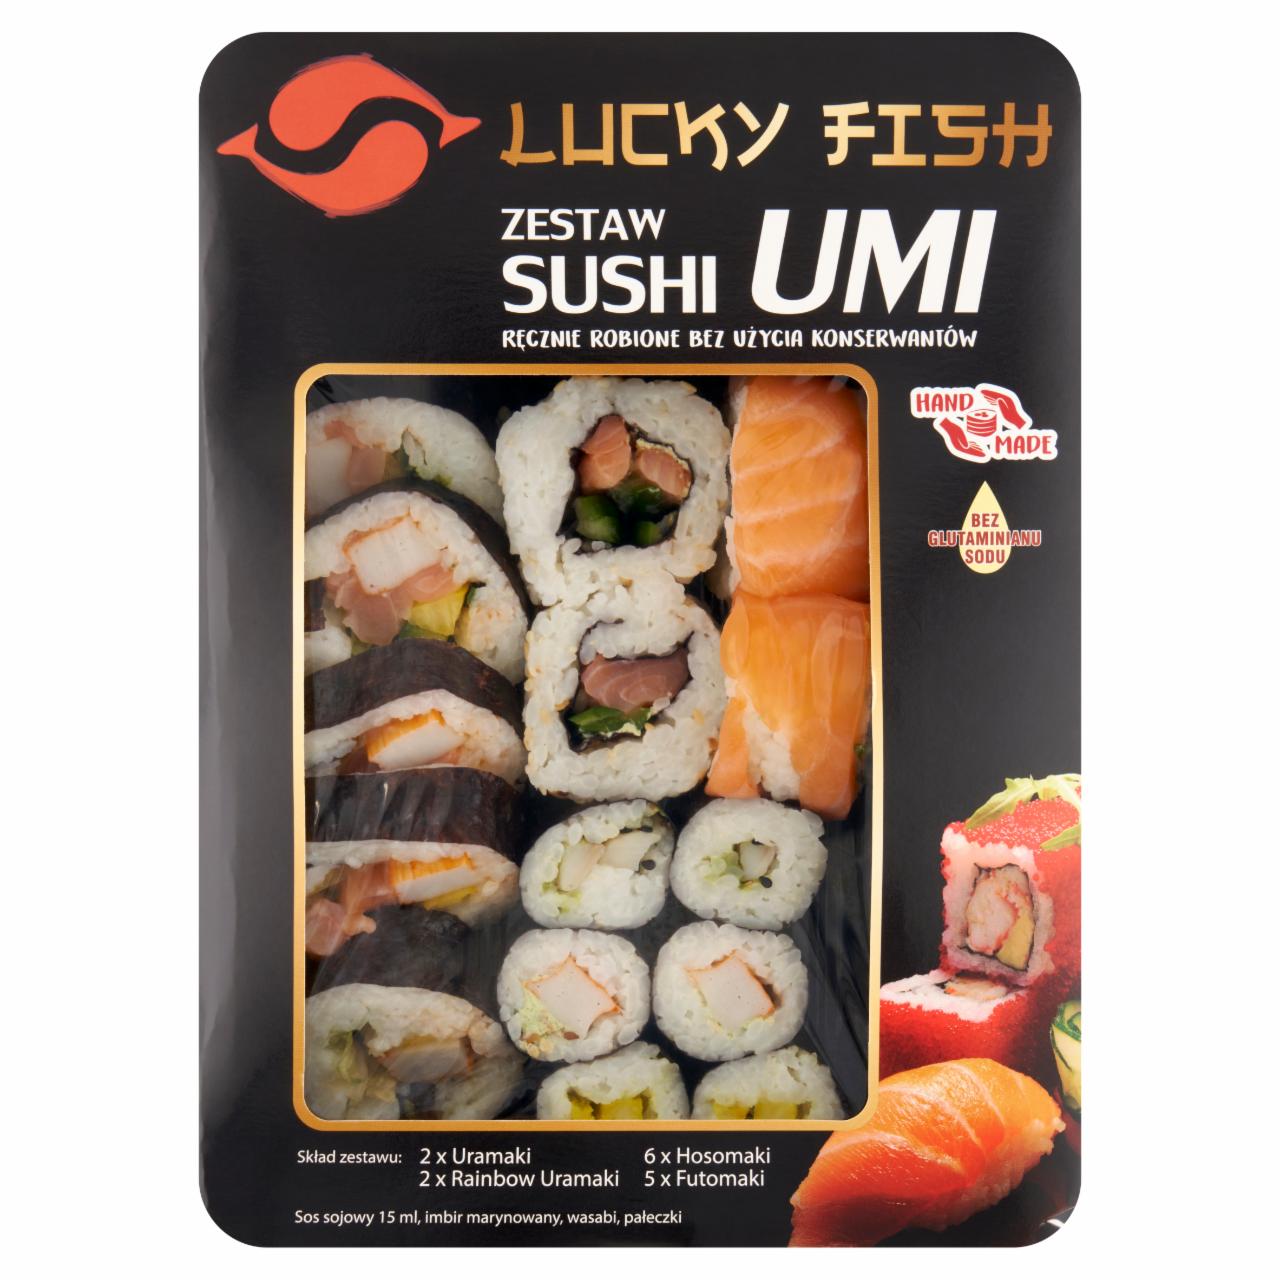 Zdjęcia - Lucky Fish Zestaw sushi Umi 390 g